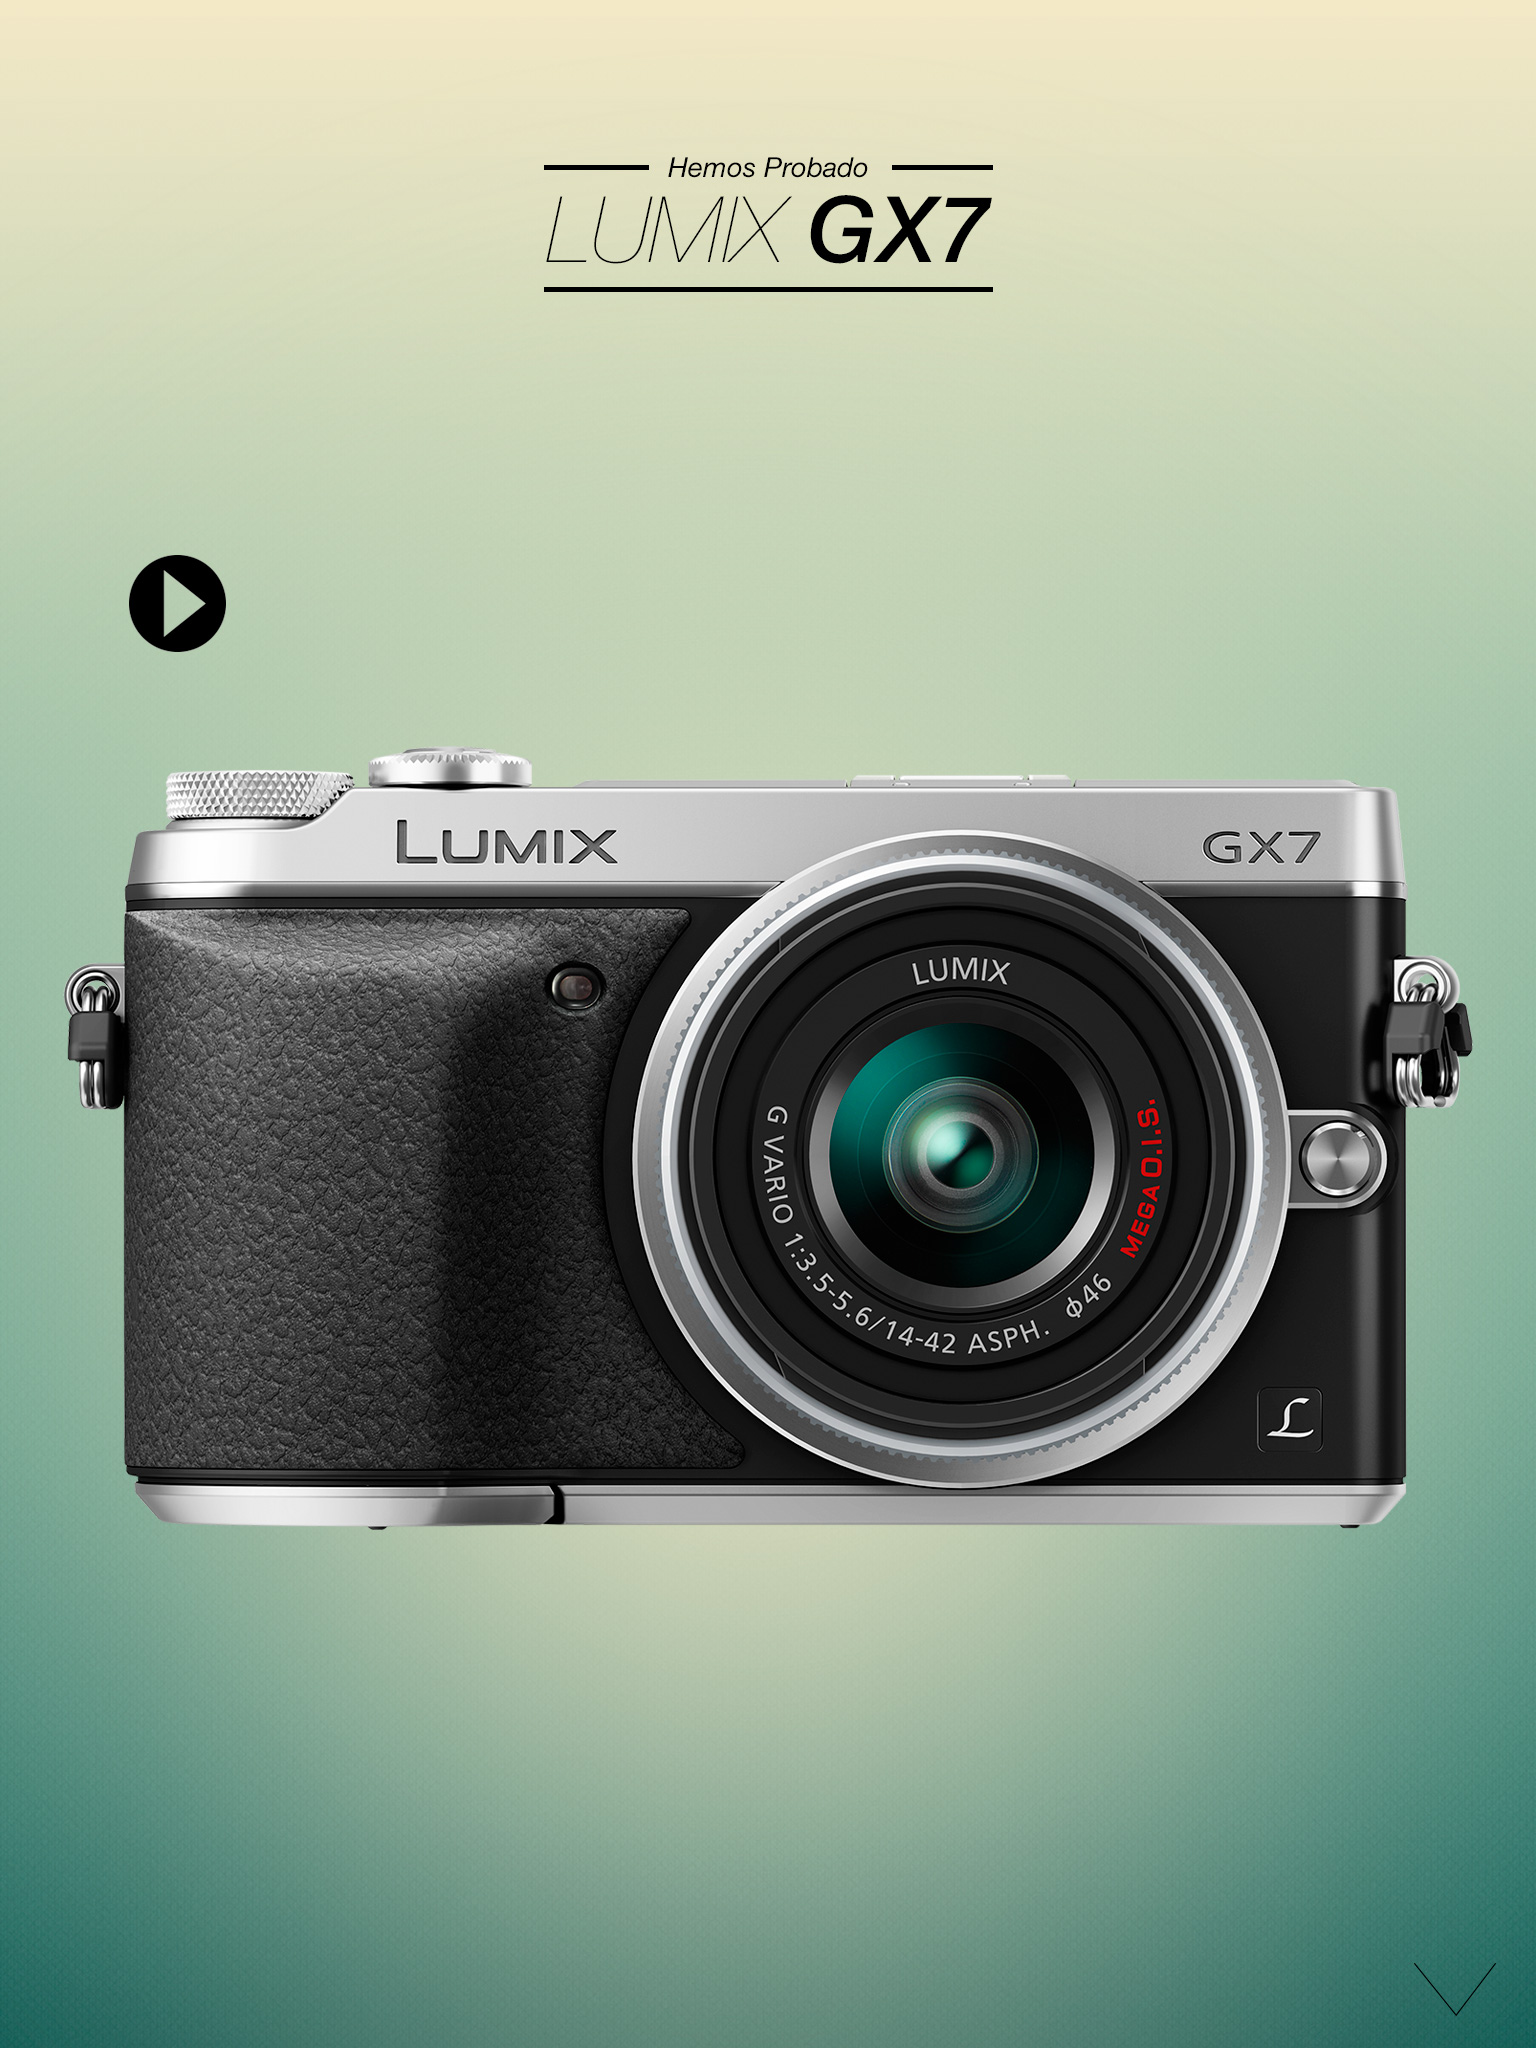 hemos probado la Lumix GX7. Continúa abajo para leer el análisis